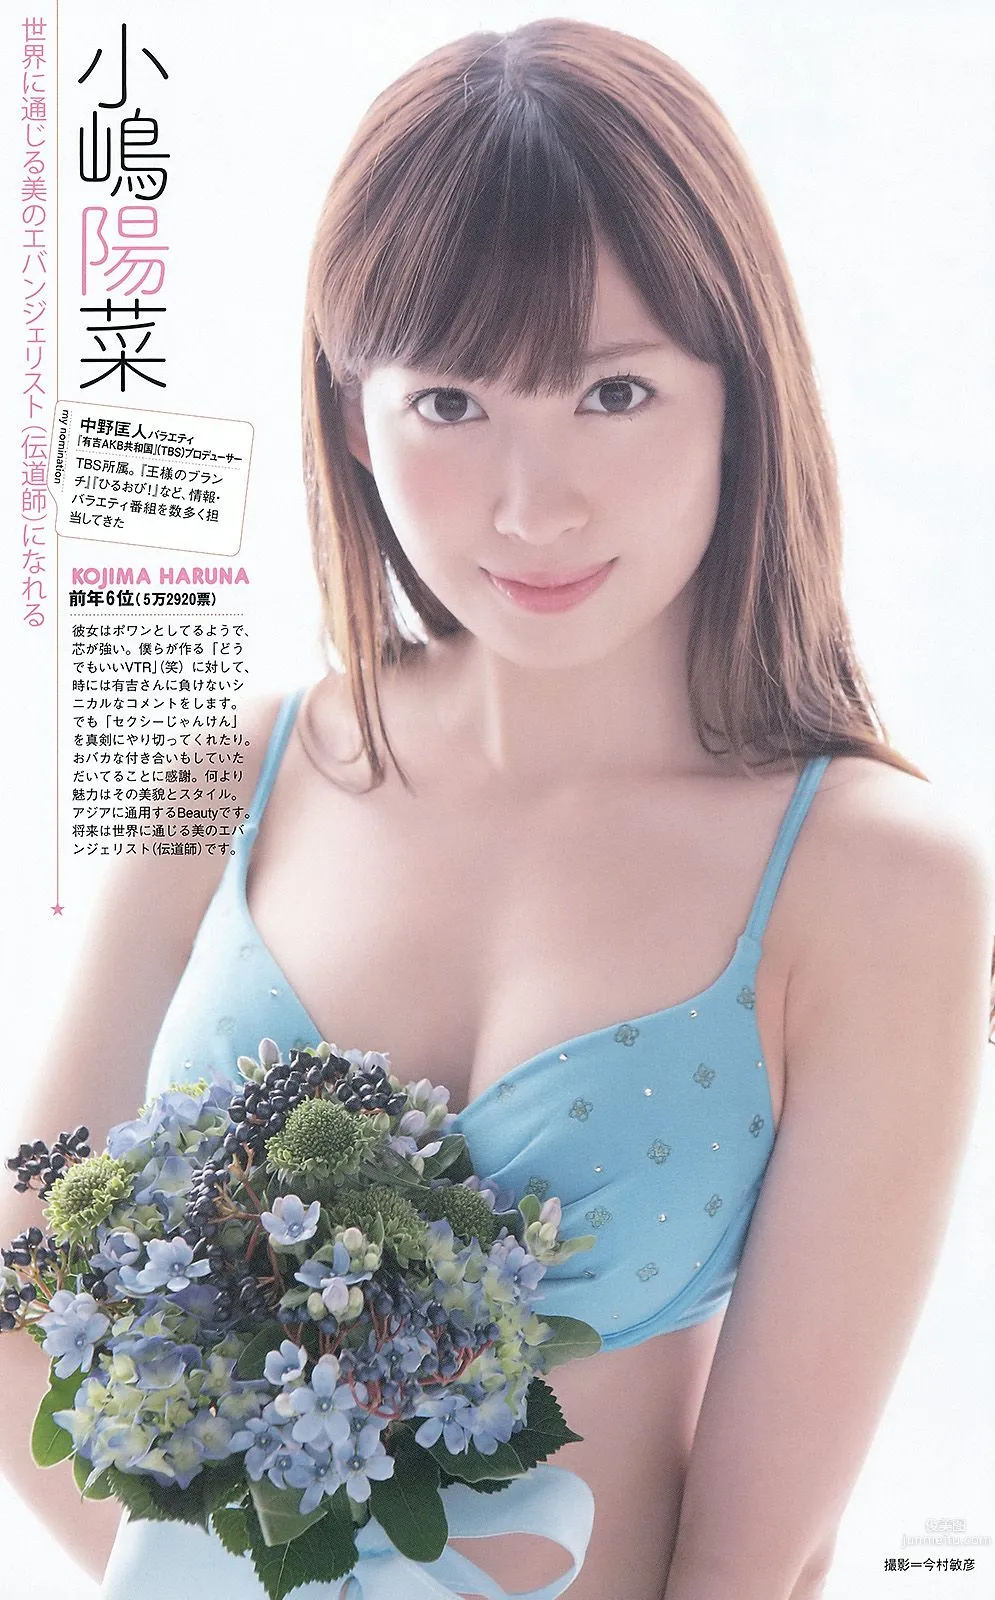 松井玲奈 大場美奈 丸高愛実 小原春香 AKB48 青木爱 香西咲 [Weekly Playboy] 2012年No.25 写真杂志46